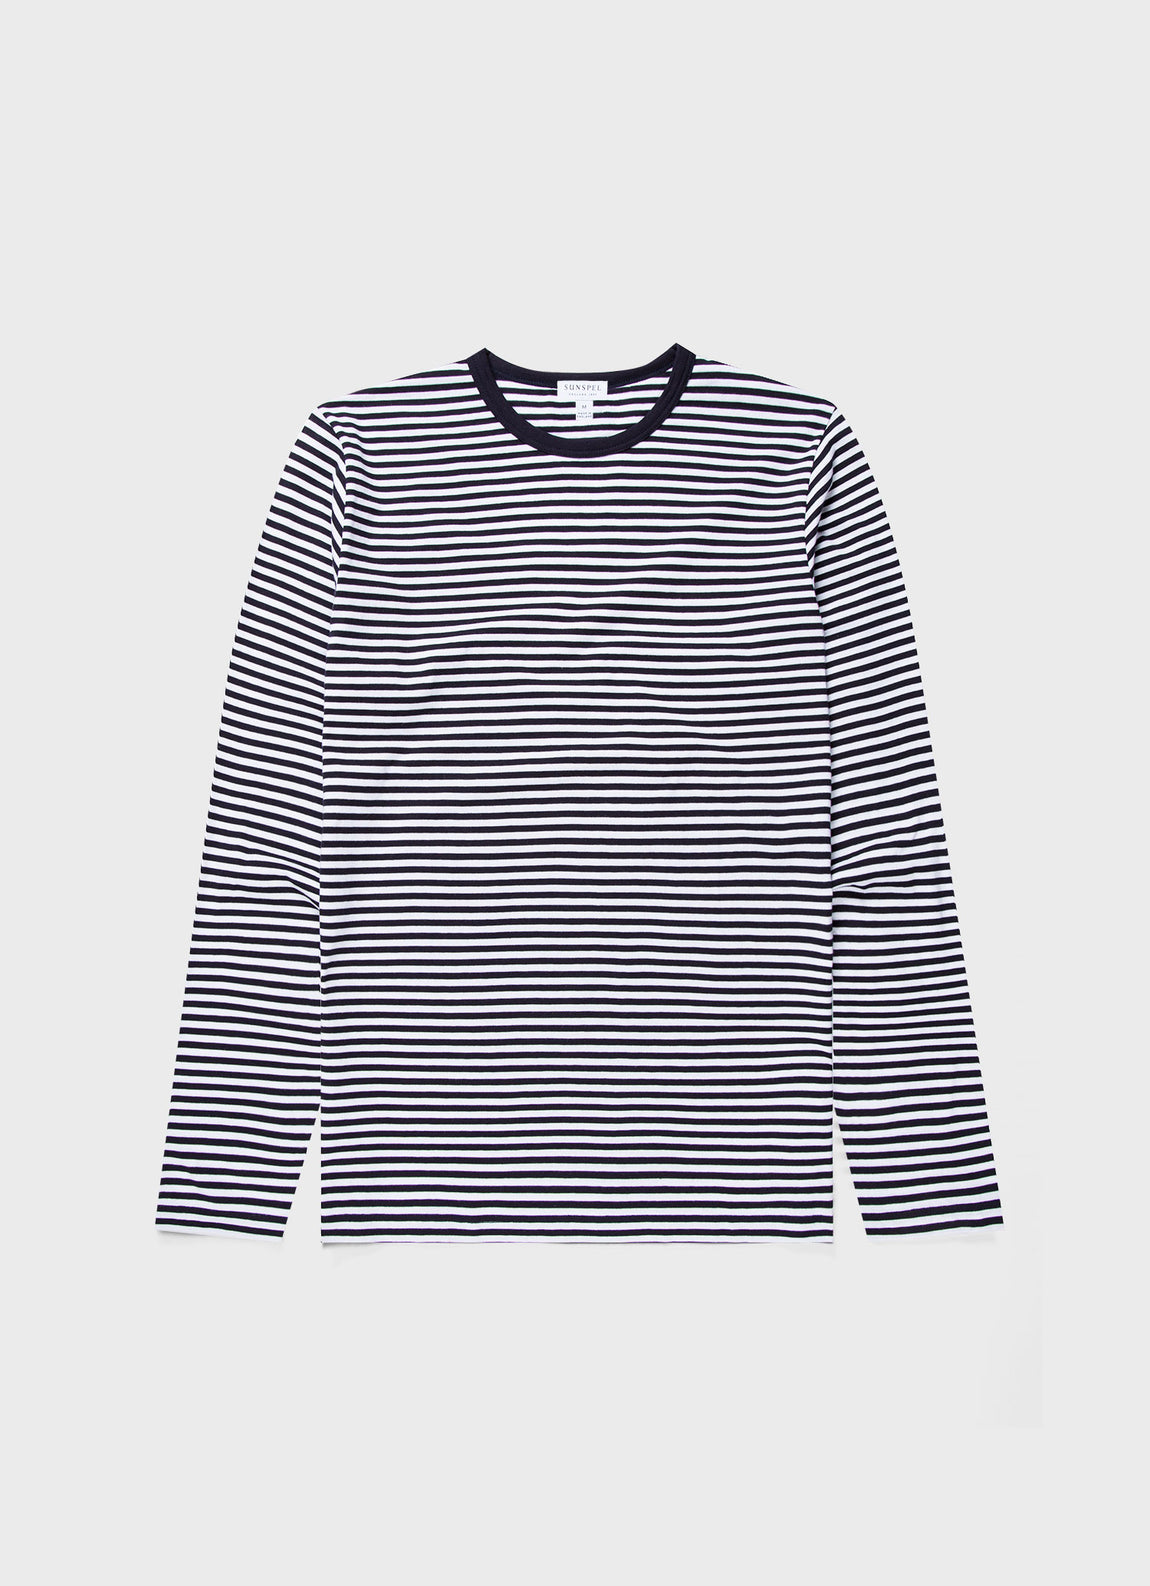 Sunspel Men's Long Sleeve English Stripe T-Shirt White/Navy Small